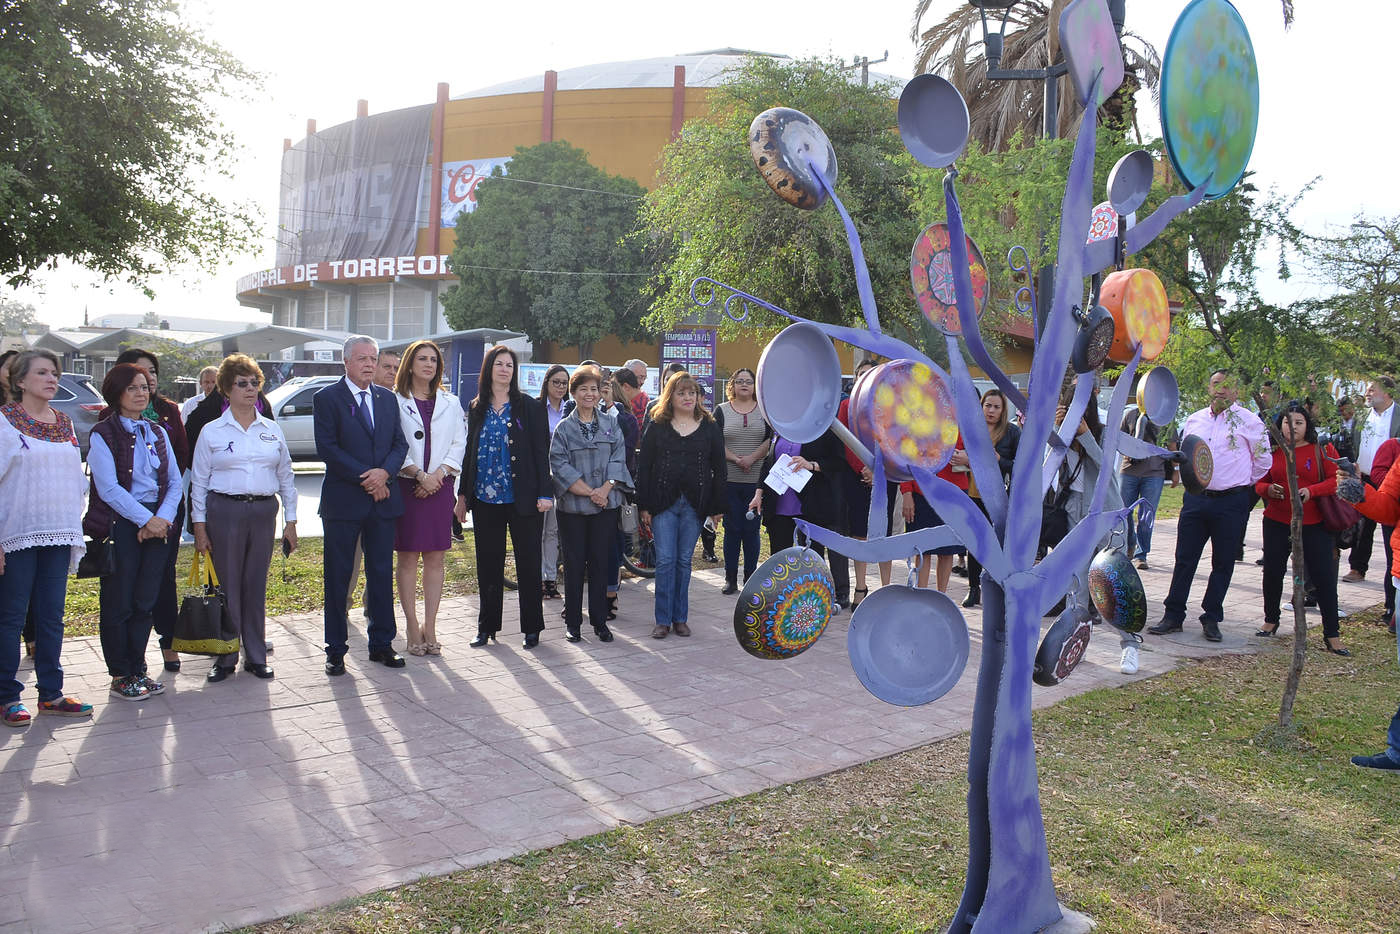 Celebran Día de la Mujer en Torreón con árbol de sartenes